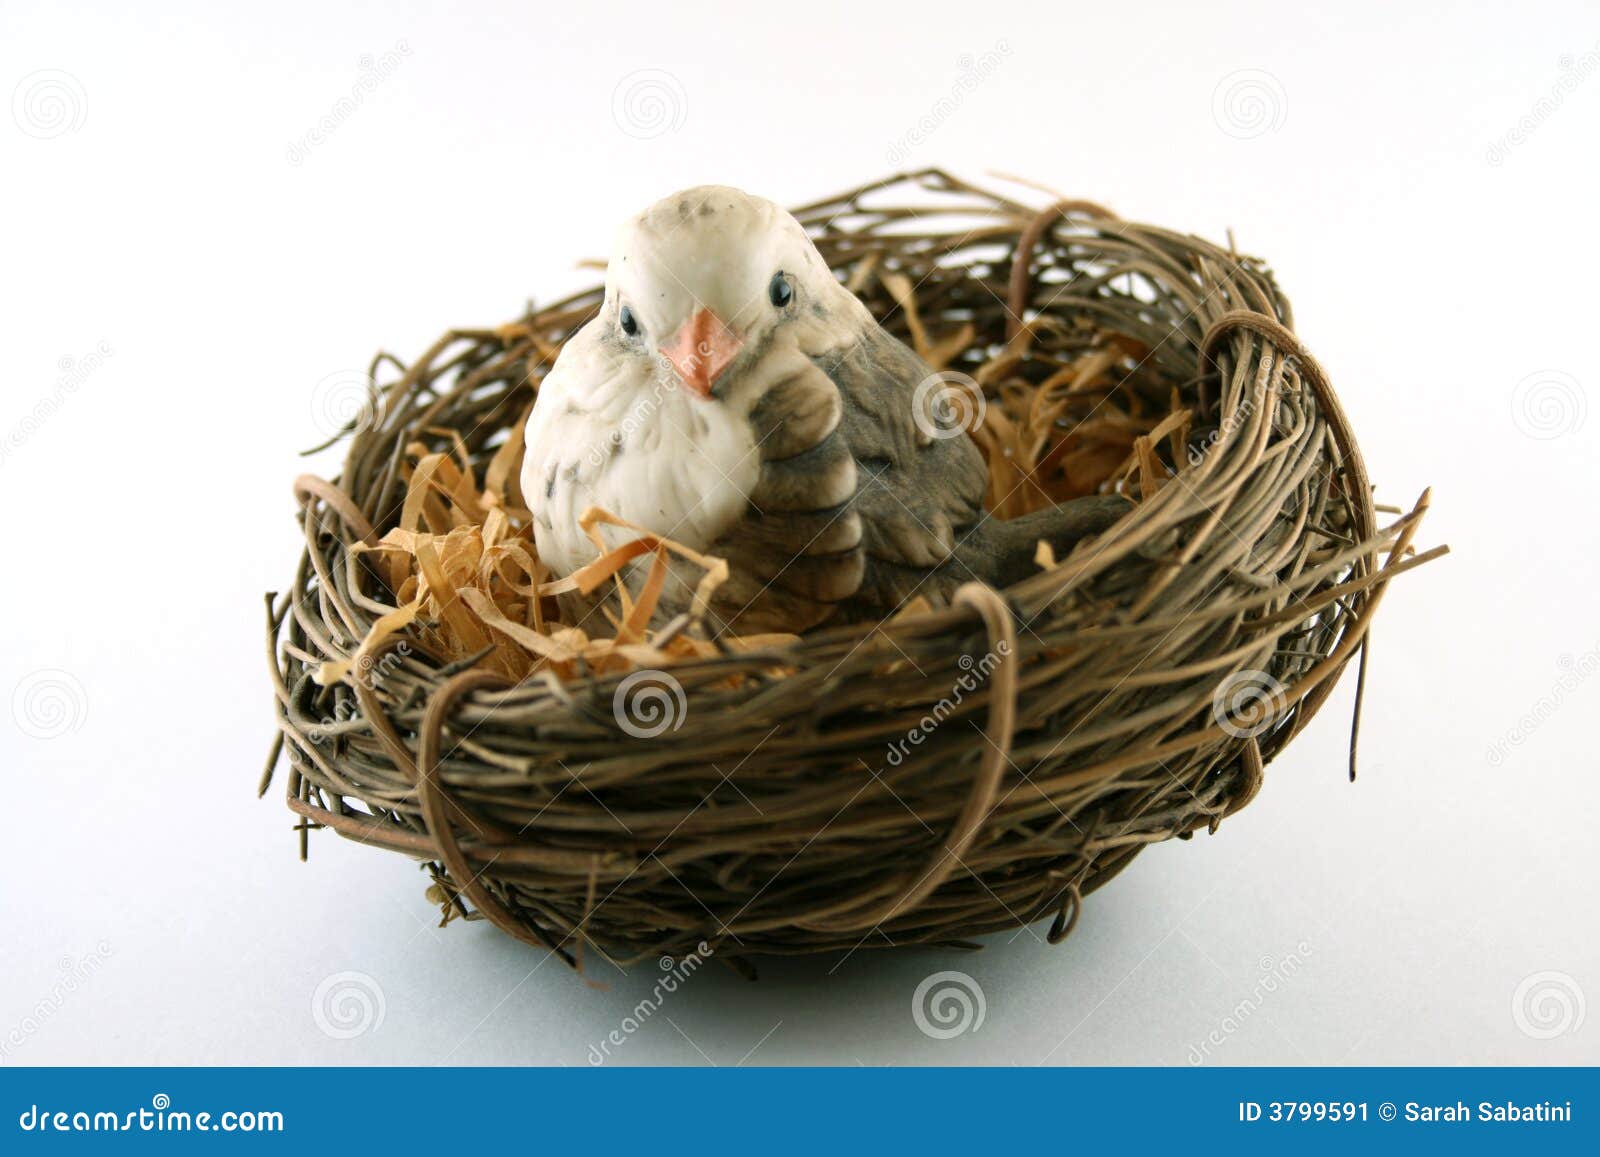 Zeestraat Sneeuwwitje Neem een ​​bad Bird in Nest stock image. Image of cold, winter, chilly - 3799591